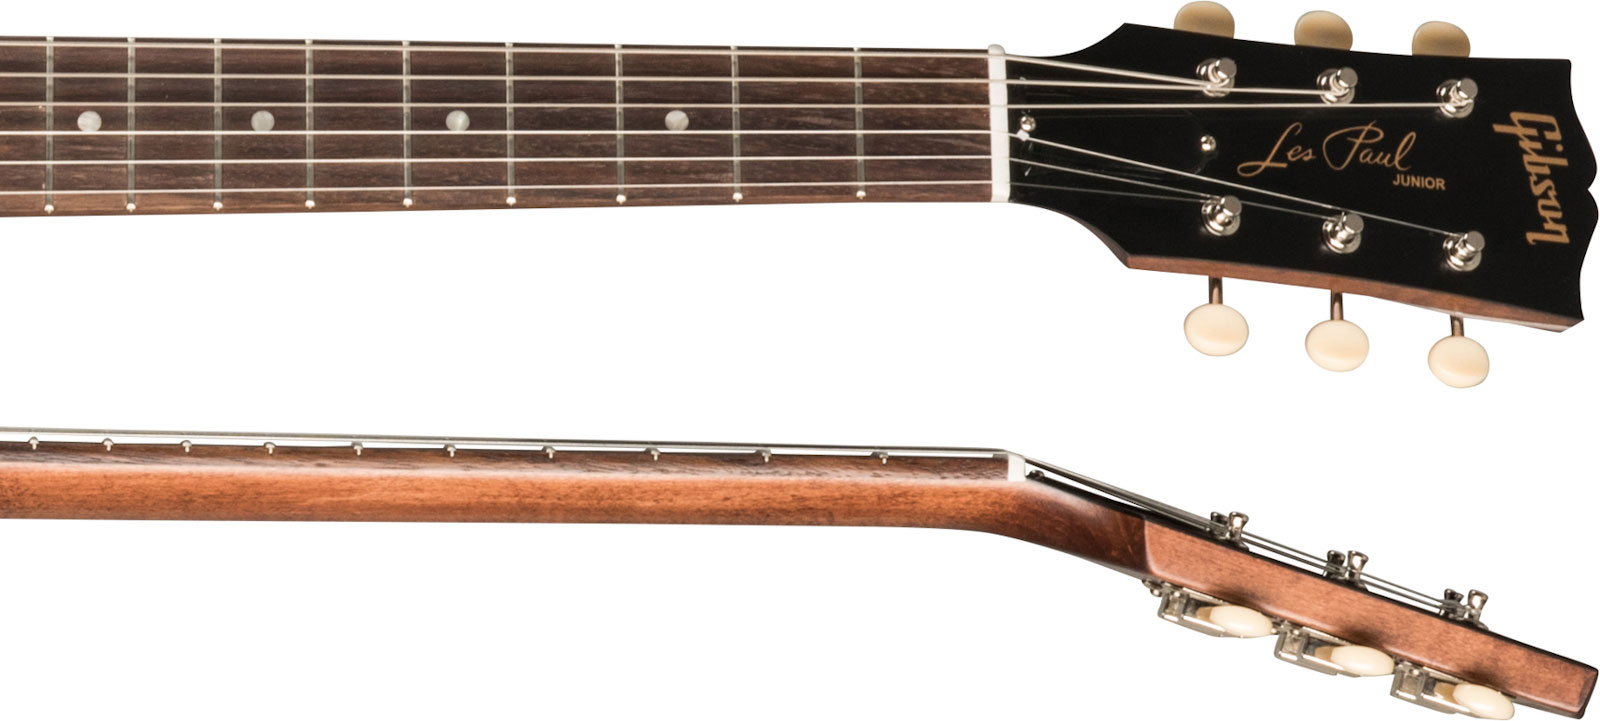 Gibson Les Paul Junior Tribute Dc Modern P90 - Worn Brown - Guitarra eléctrica de doble corte - Variation 3